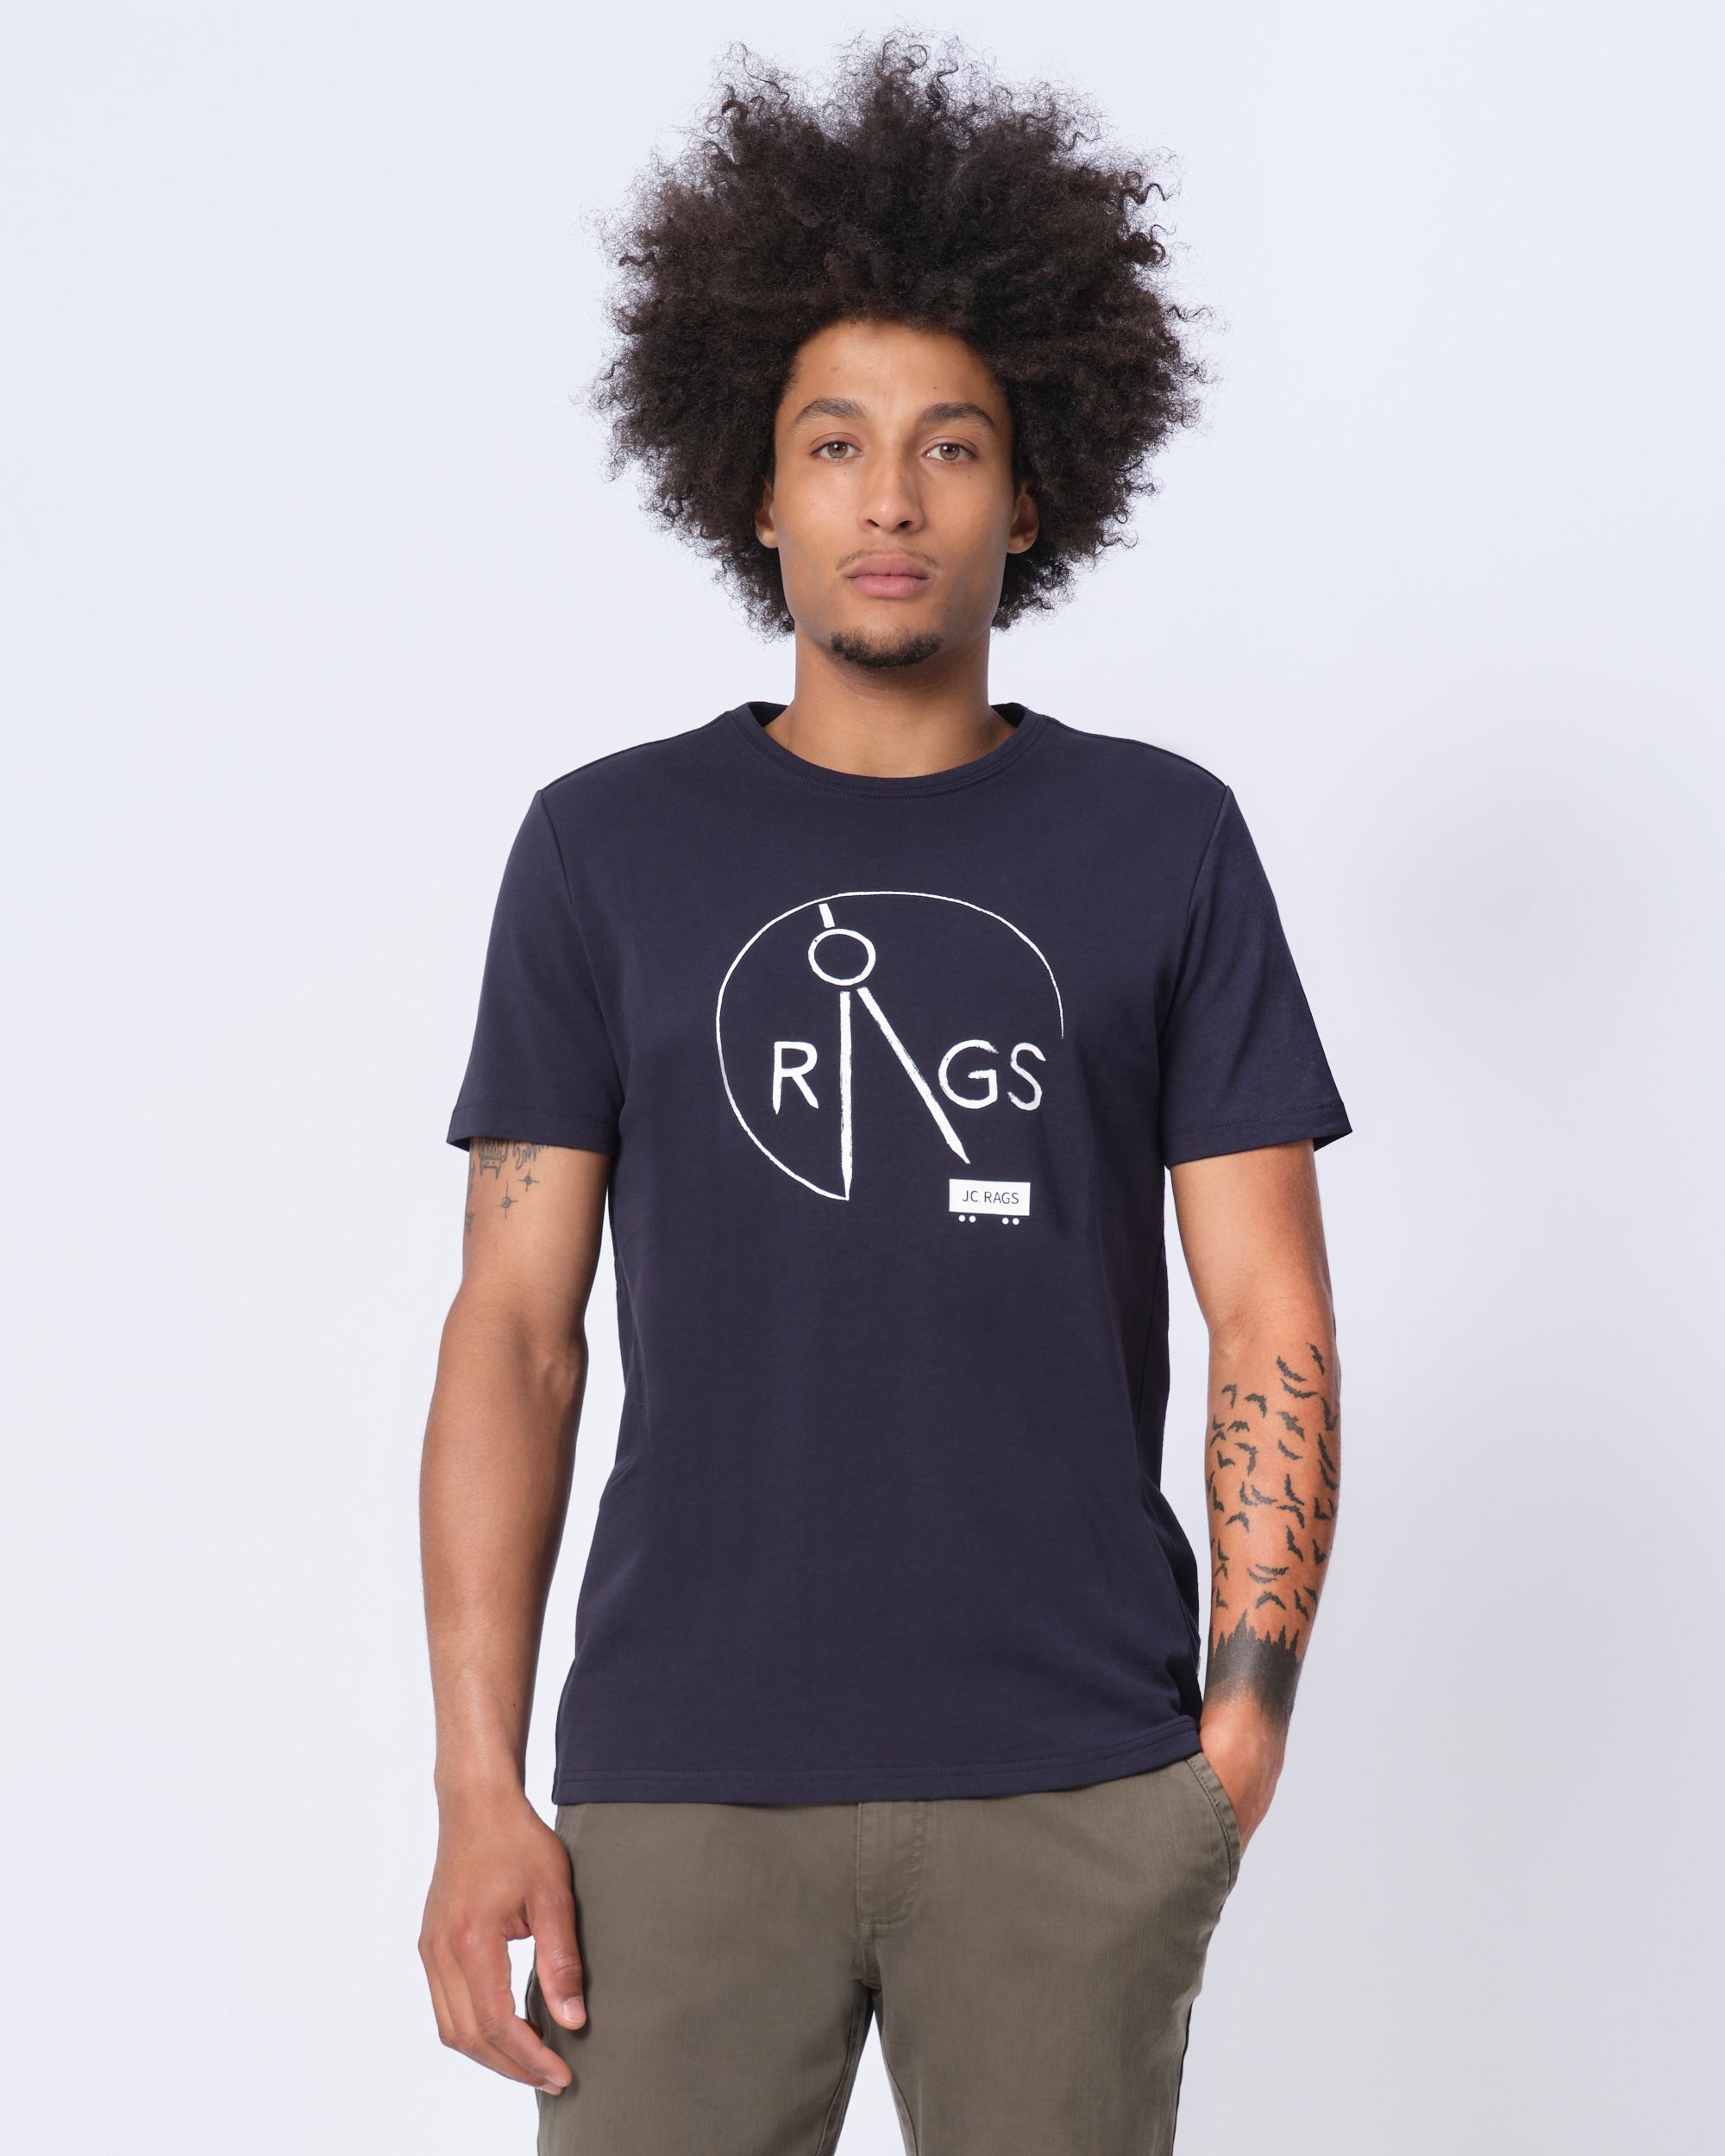 J.C. RAGS Chiel T-shirt KM Navy uni 073955-002-L